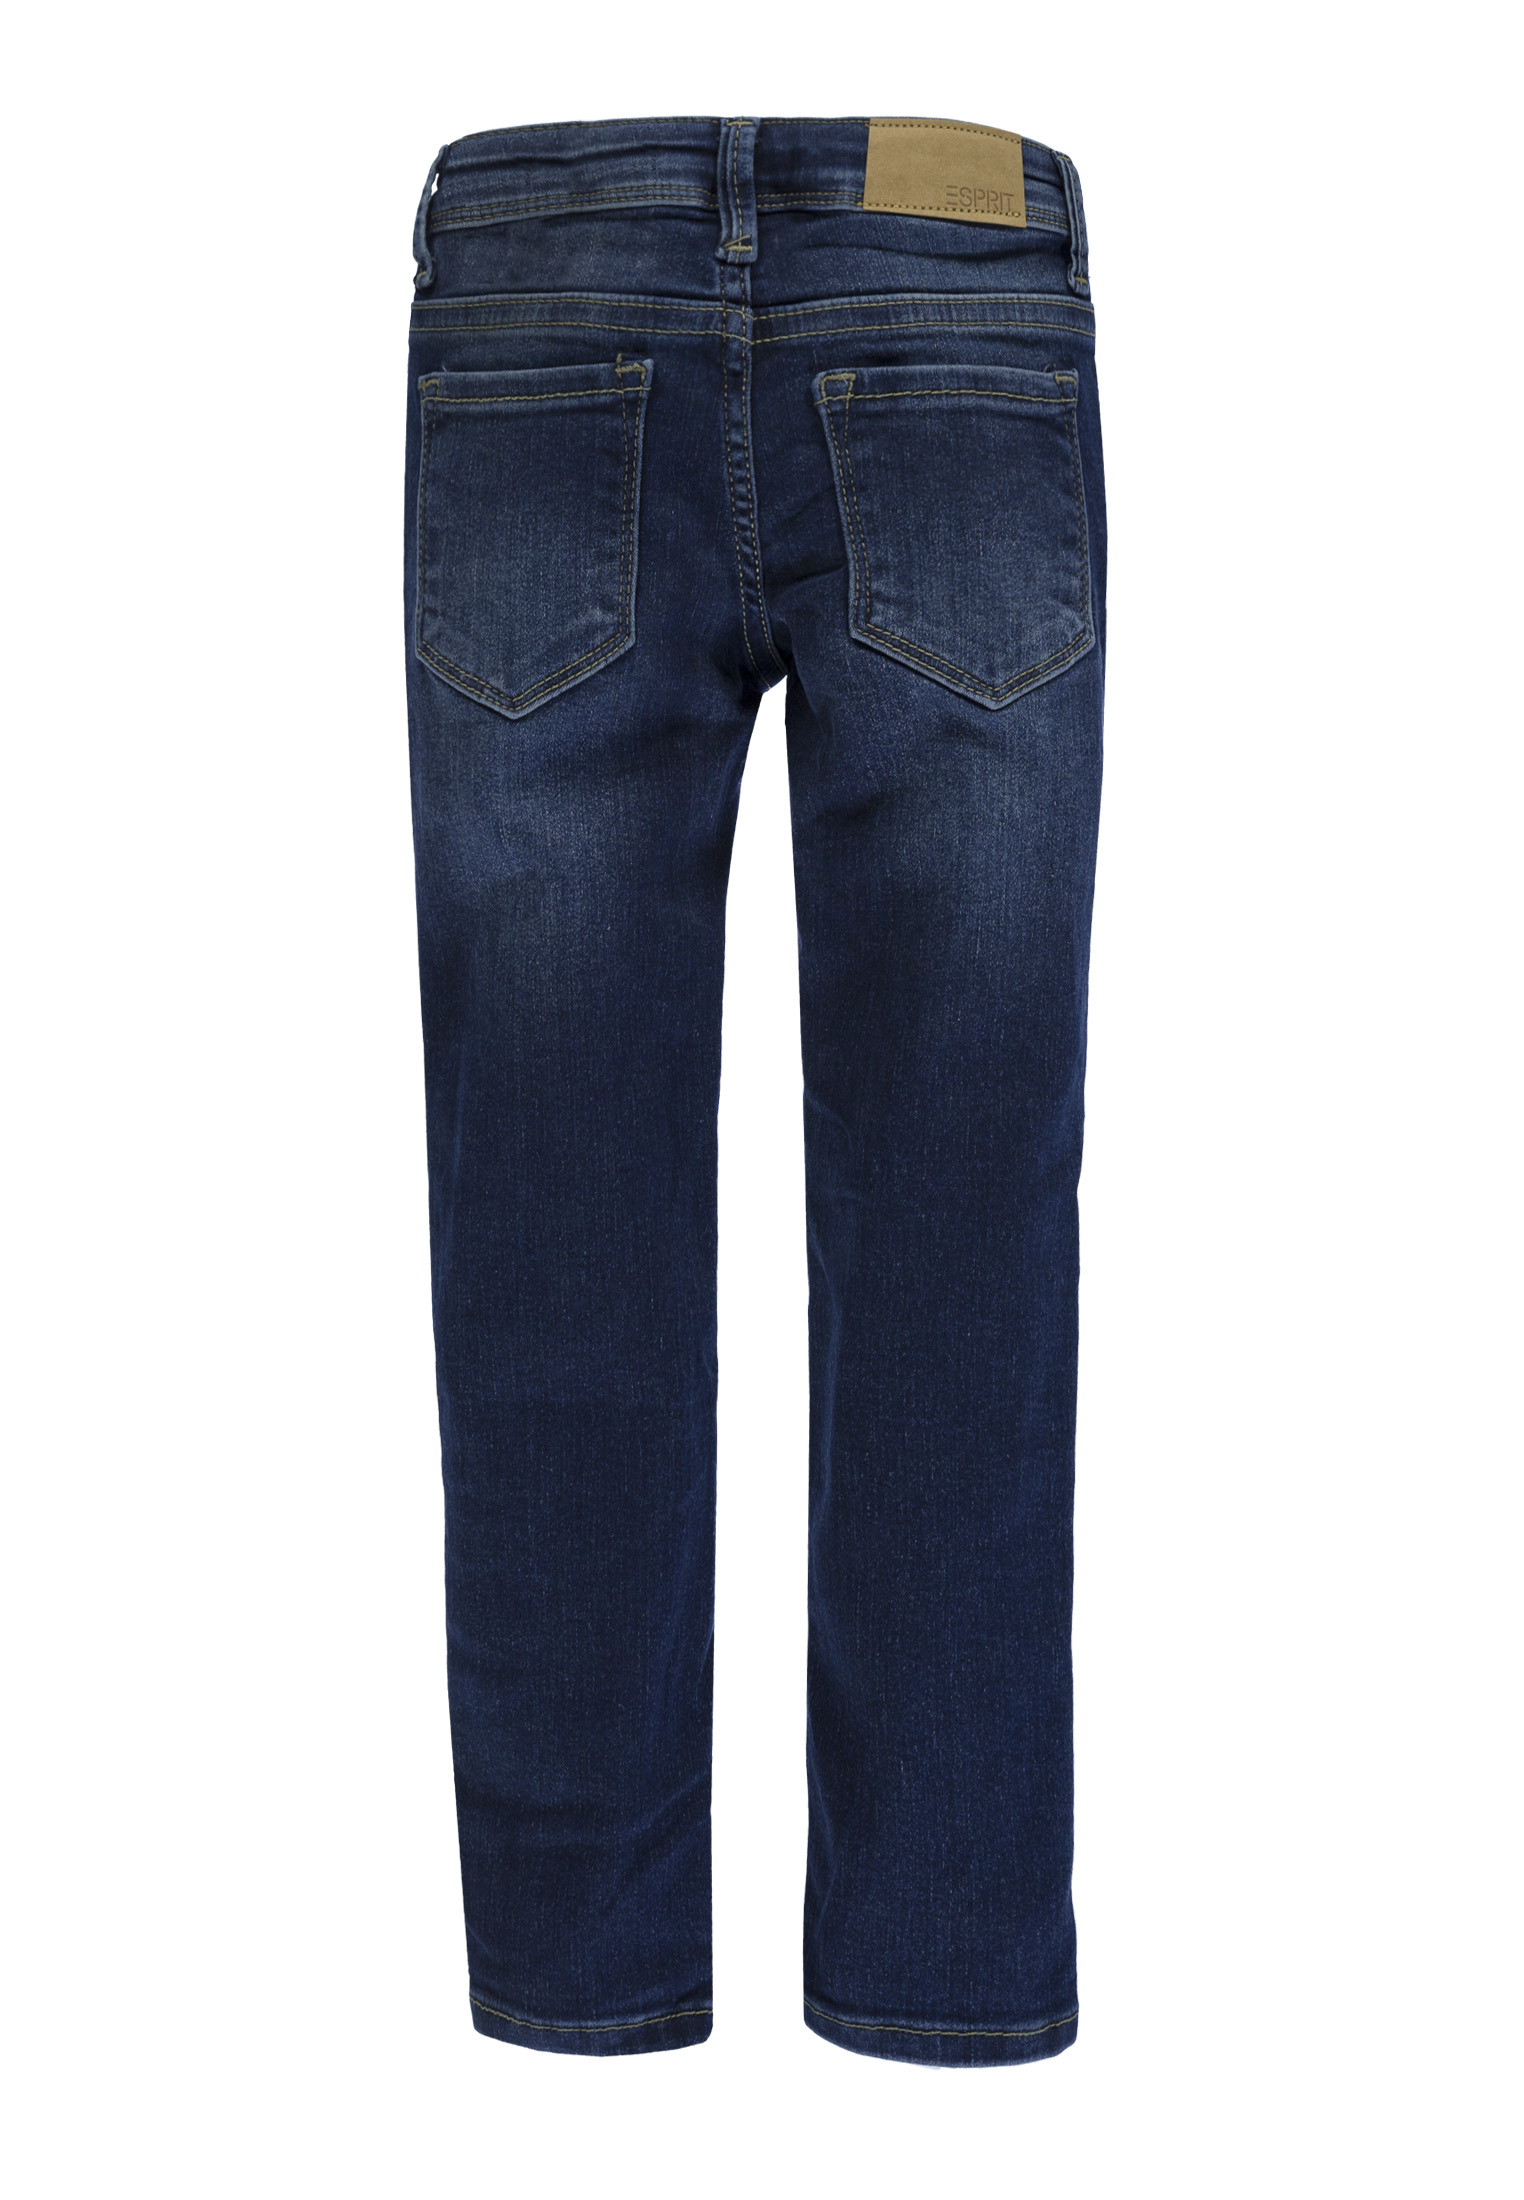 Dziewczęce jeansy, Slim Fit, niebieskie, Esprit